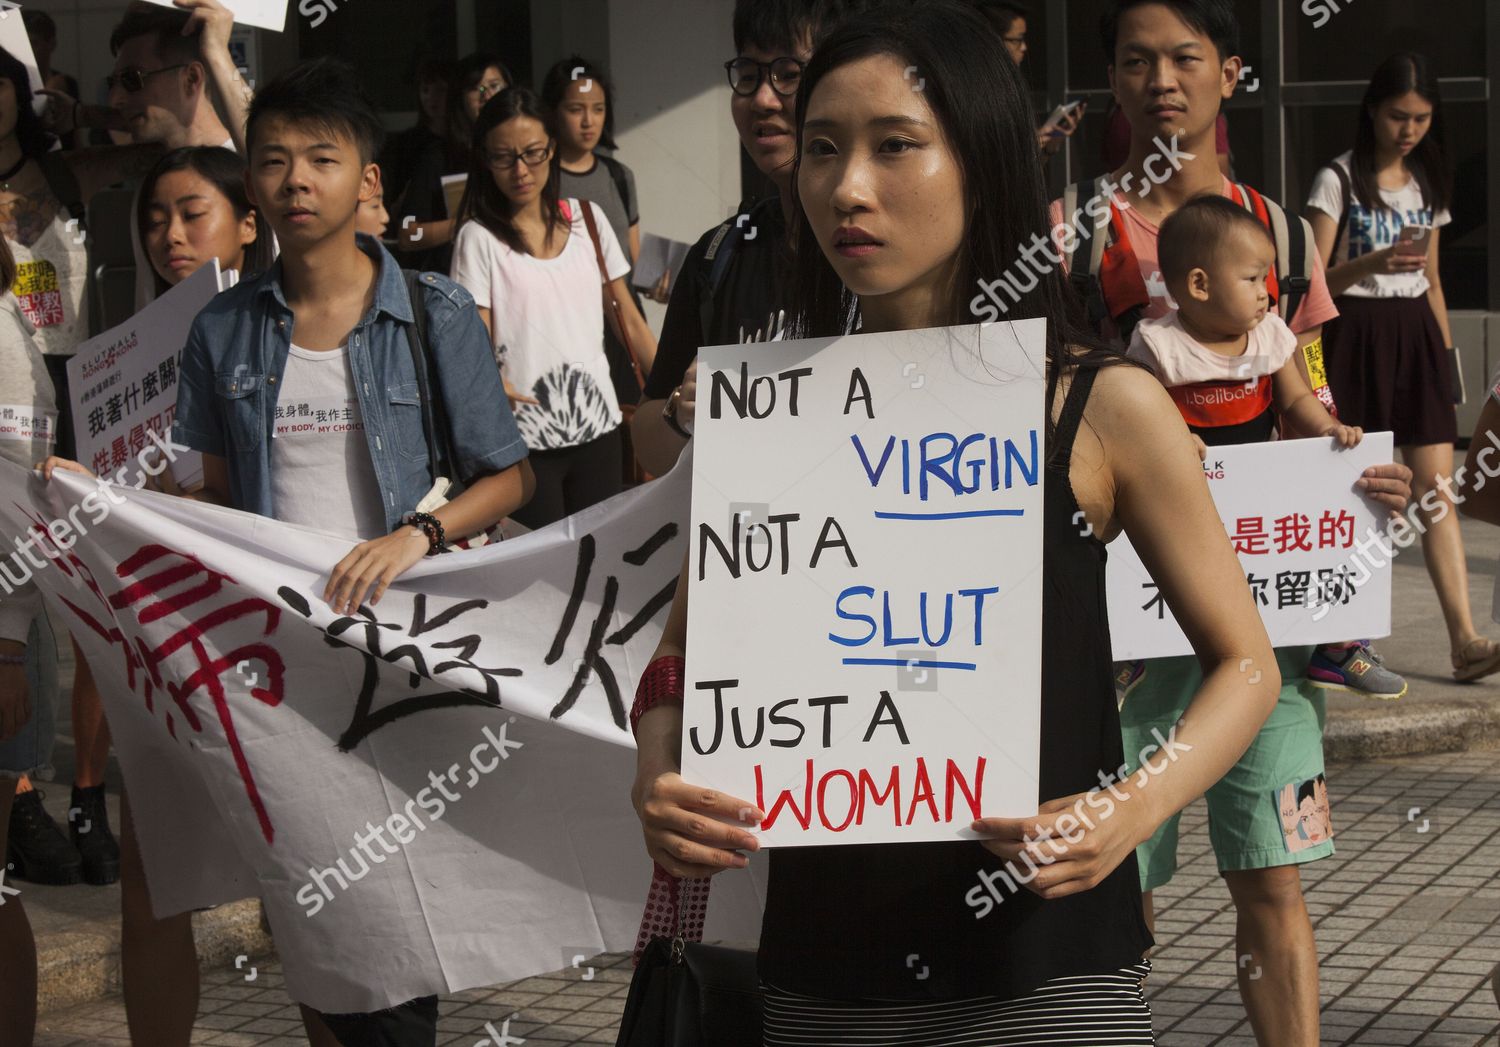 SEX AGENCY in Hong Kong